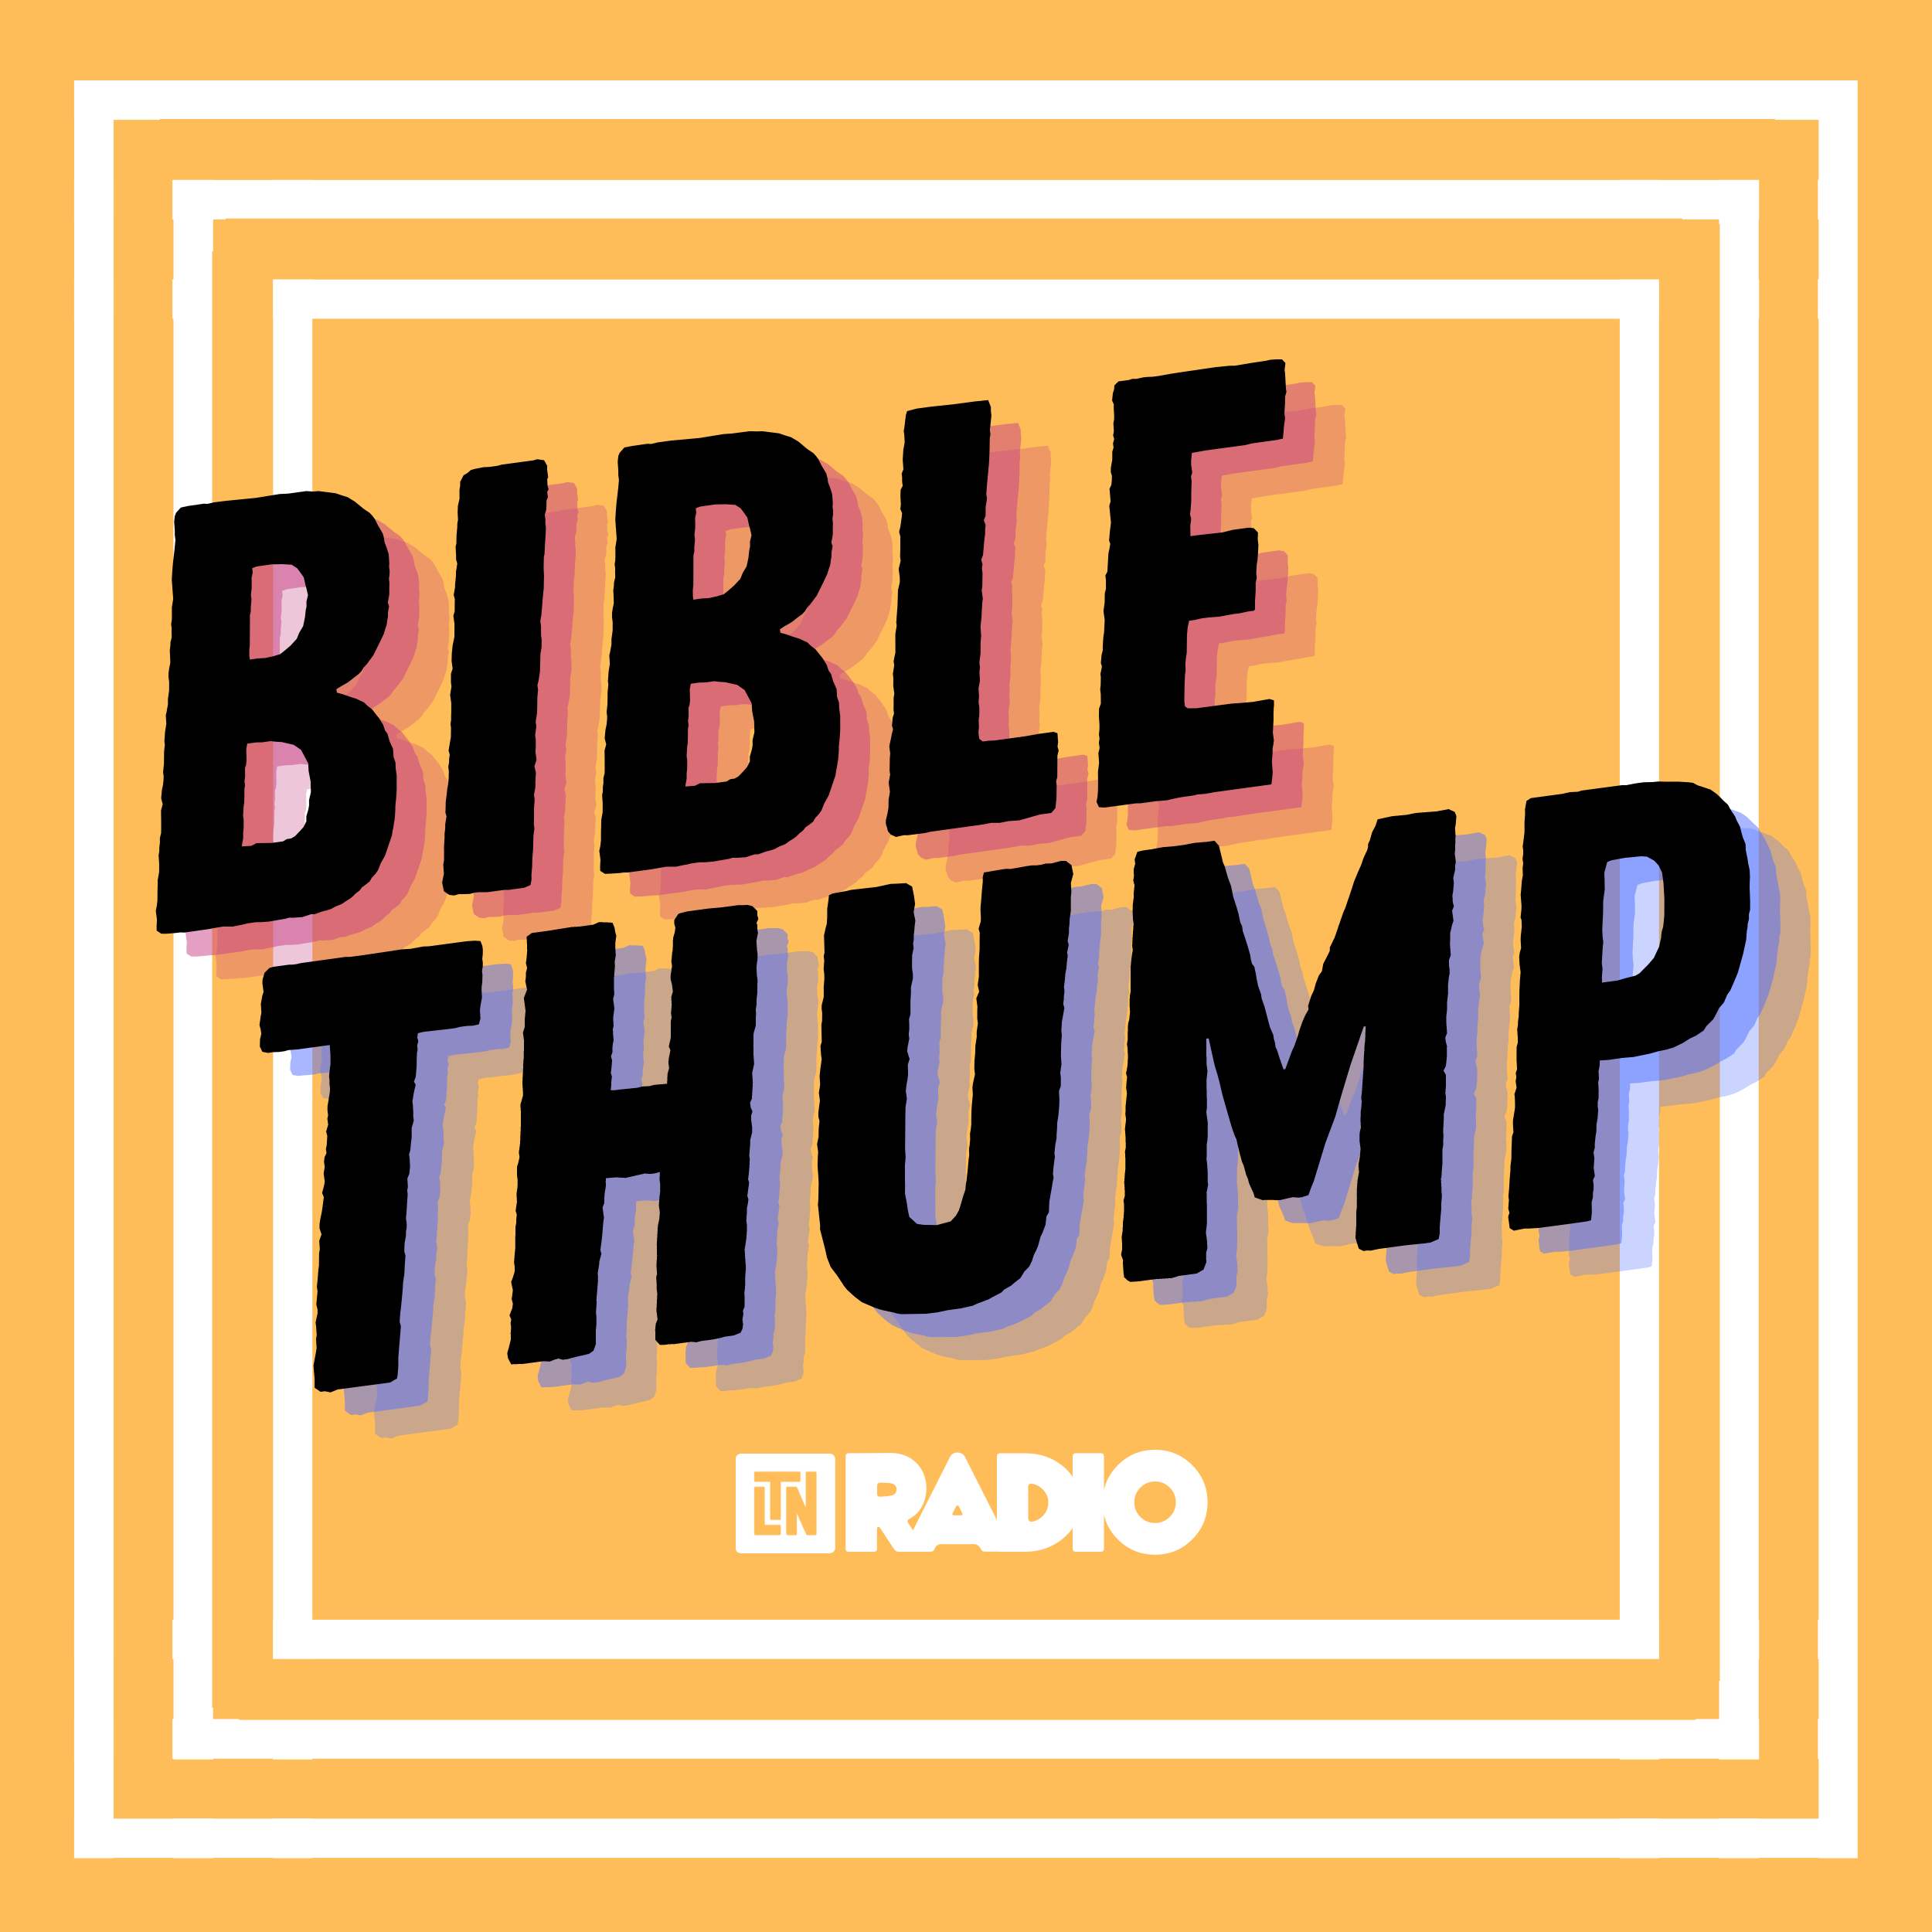 Bible Thump | A Kind Warning